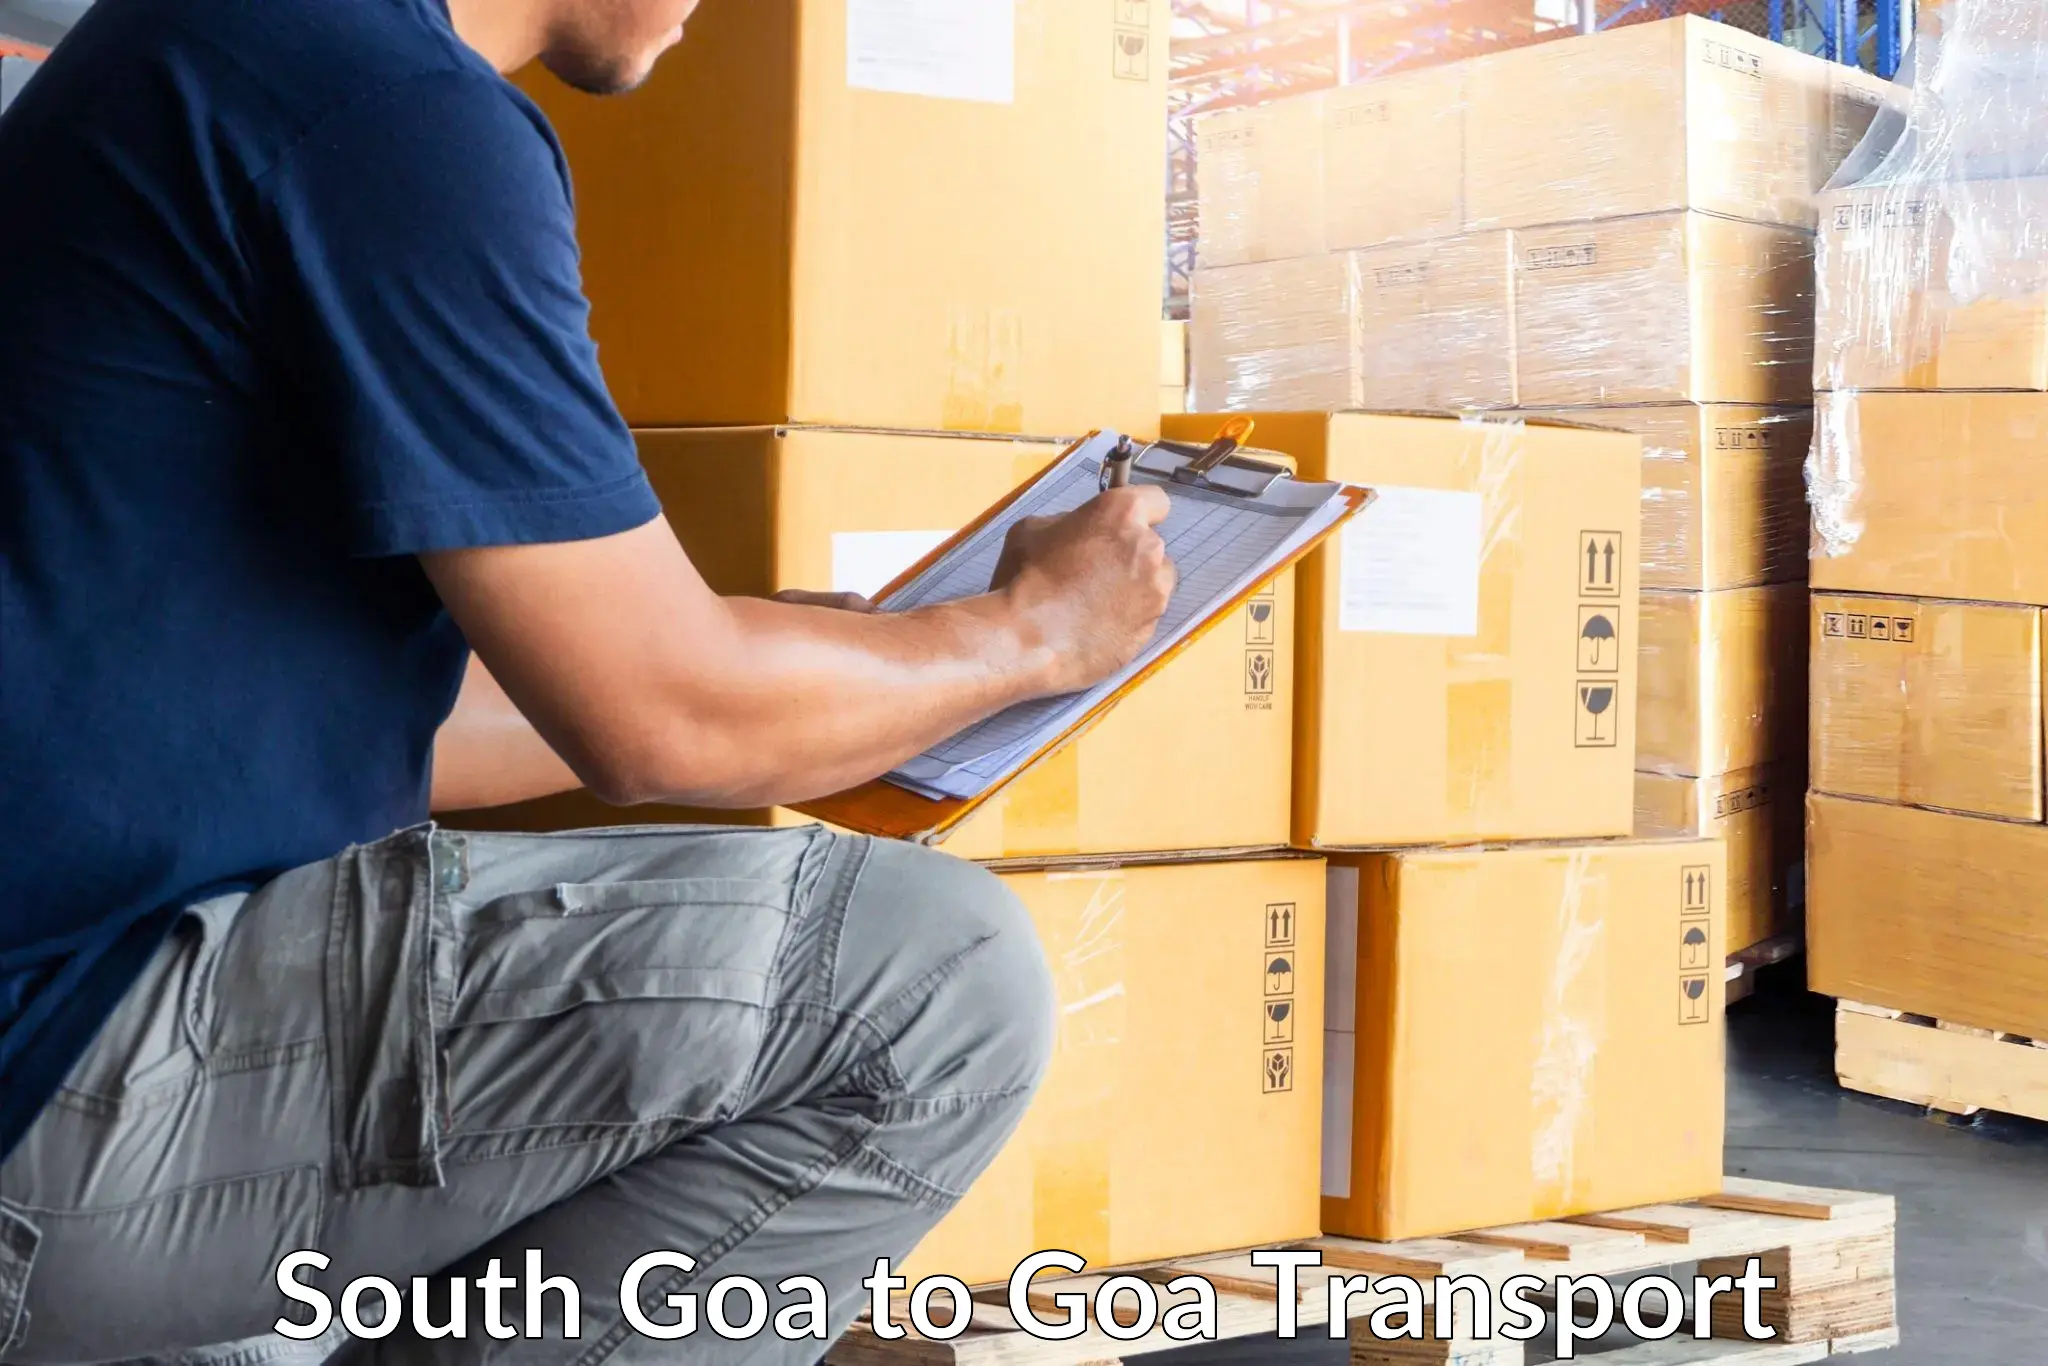 Online transport service South Goa to Mormugao Port